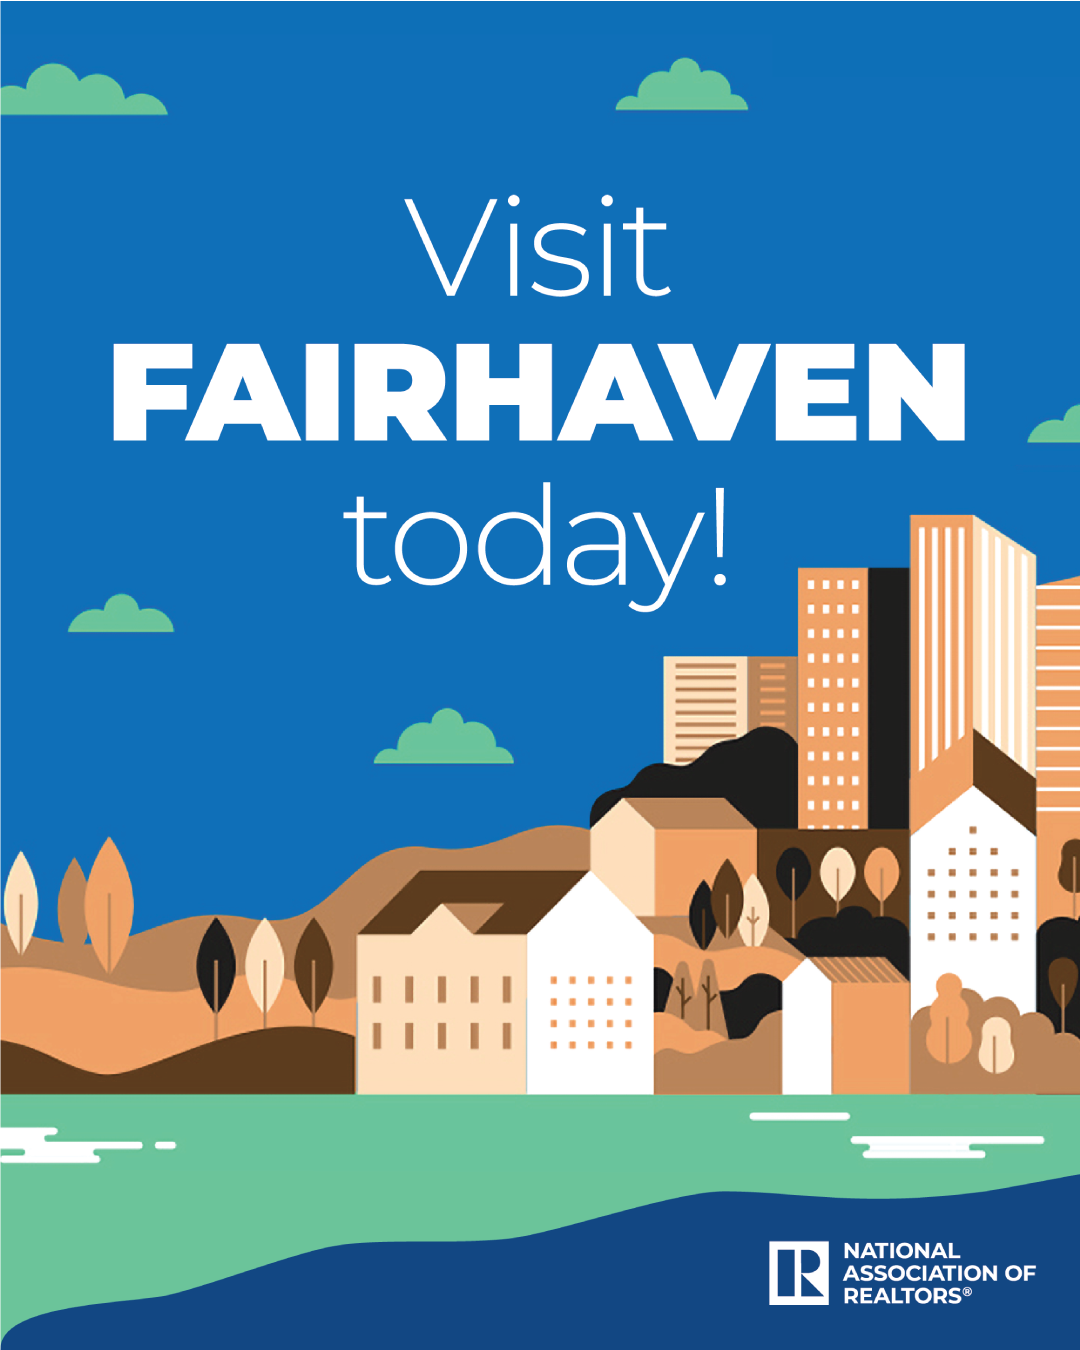 FairHaven Fair Housing